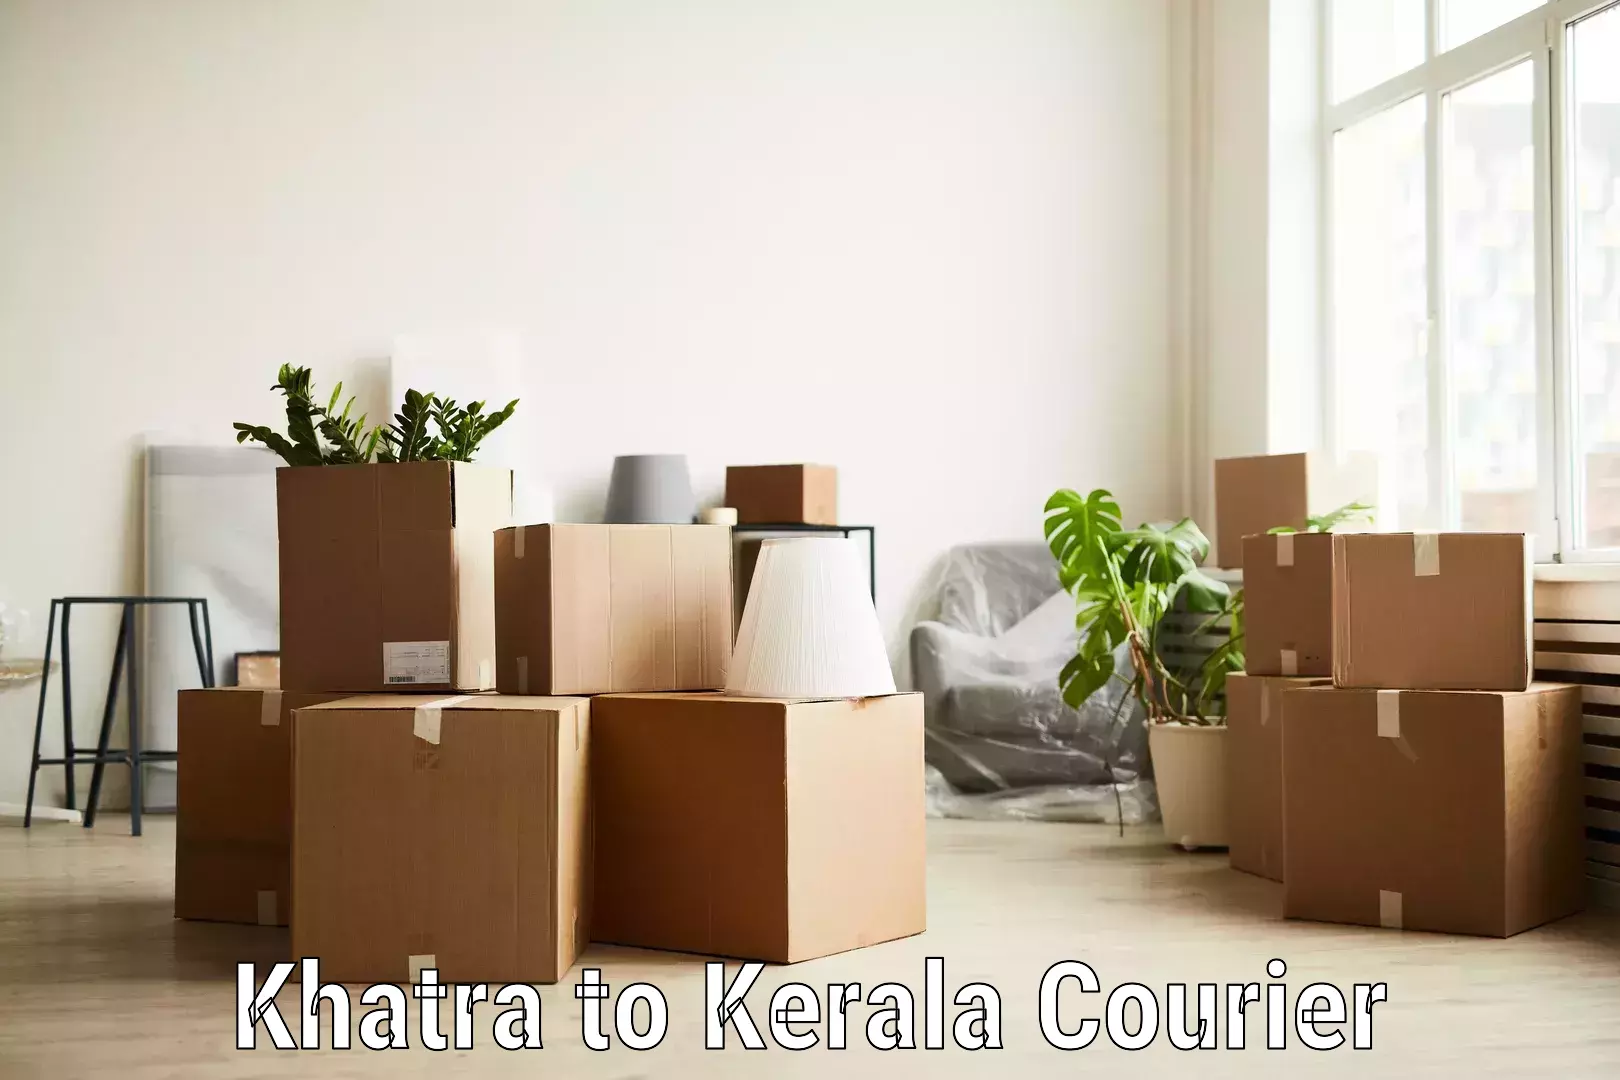 Supply chain efficiency Khatra to Cherthala